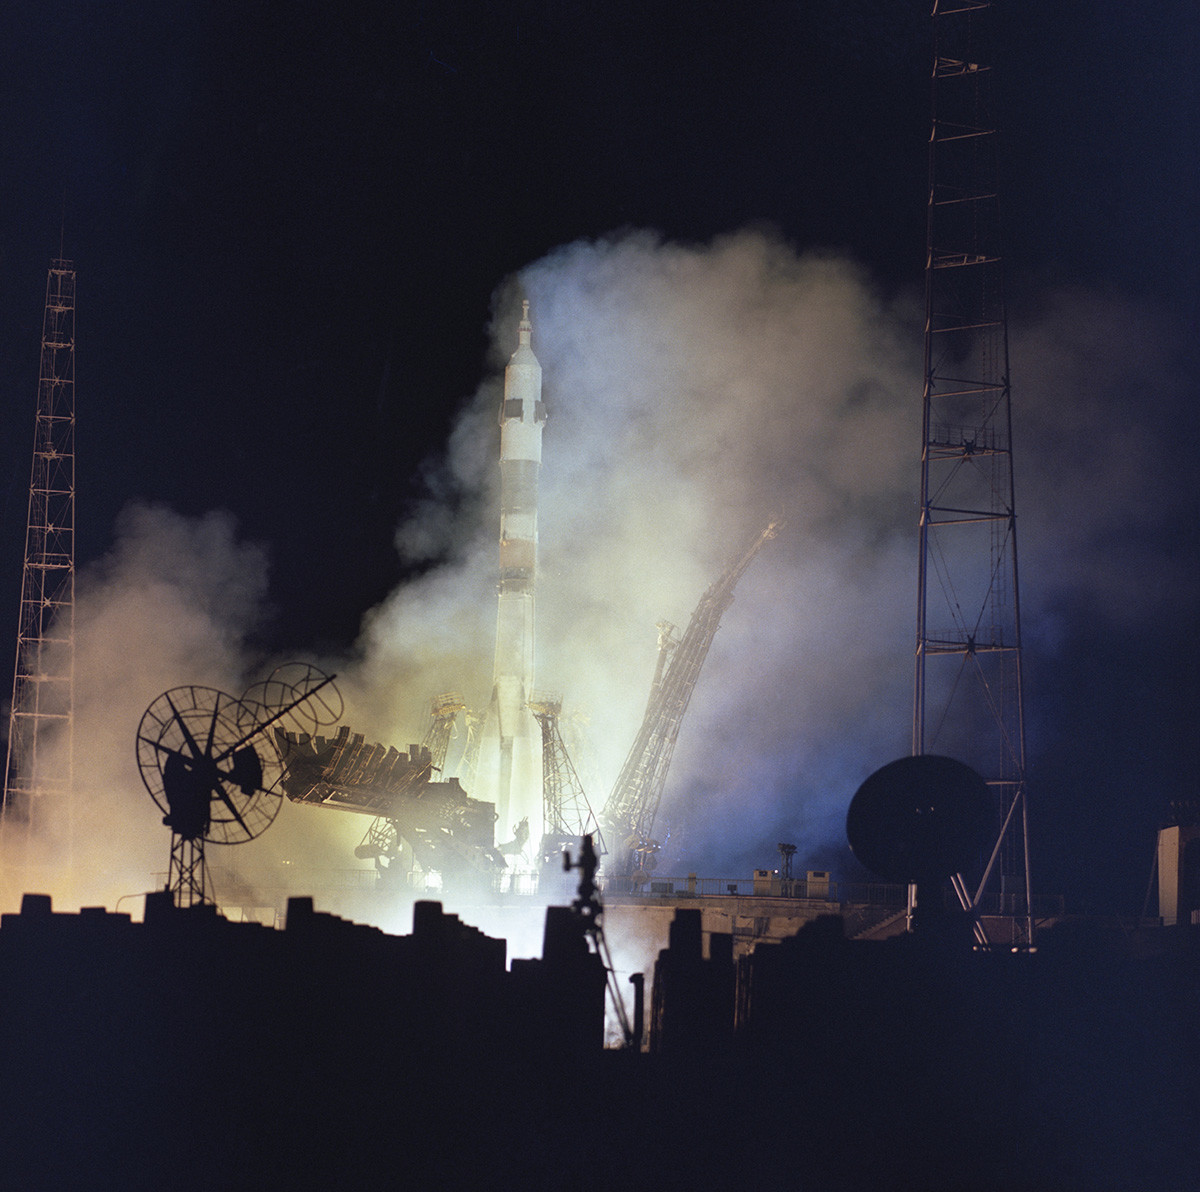 Казахстан. Кызылординская область. 14 октября 1976 г. Ночной старт ракеты-носителя с космическим кораблем 